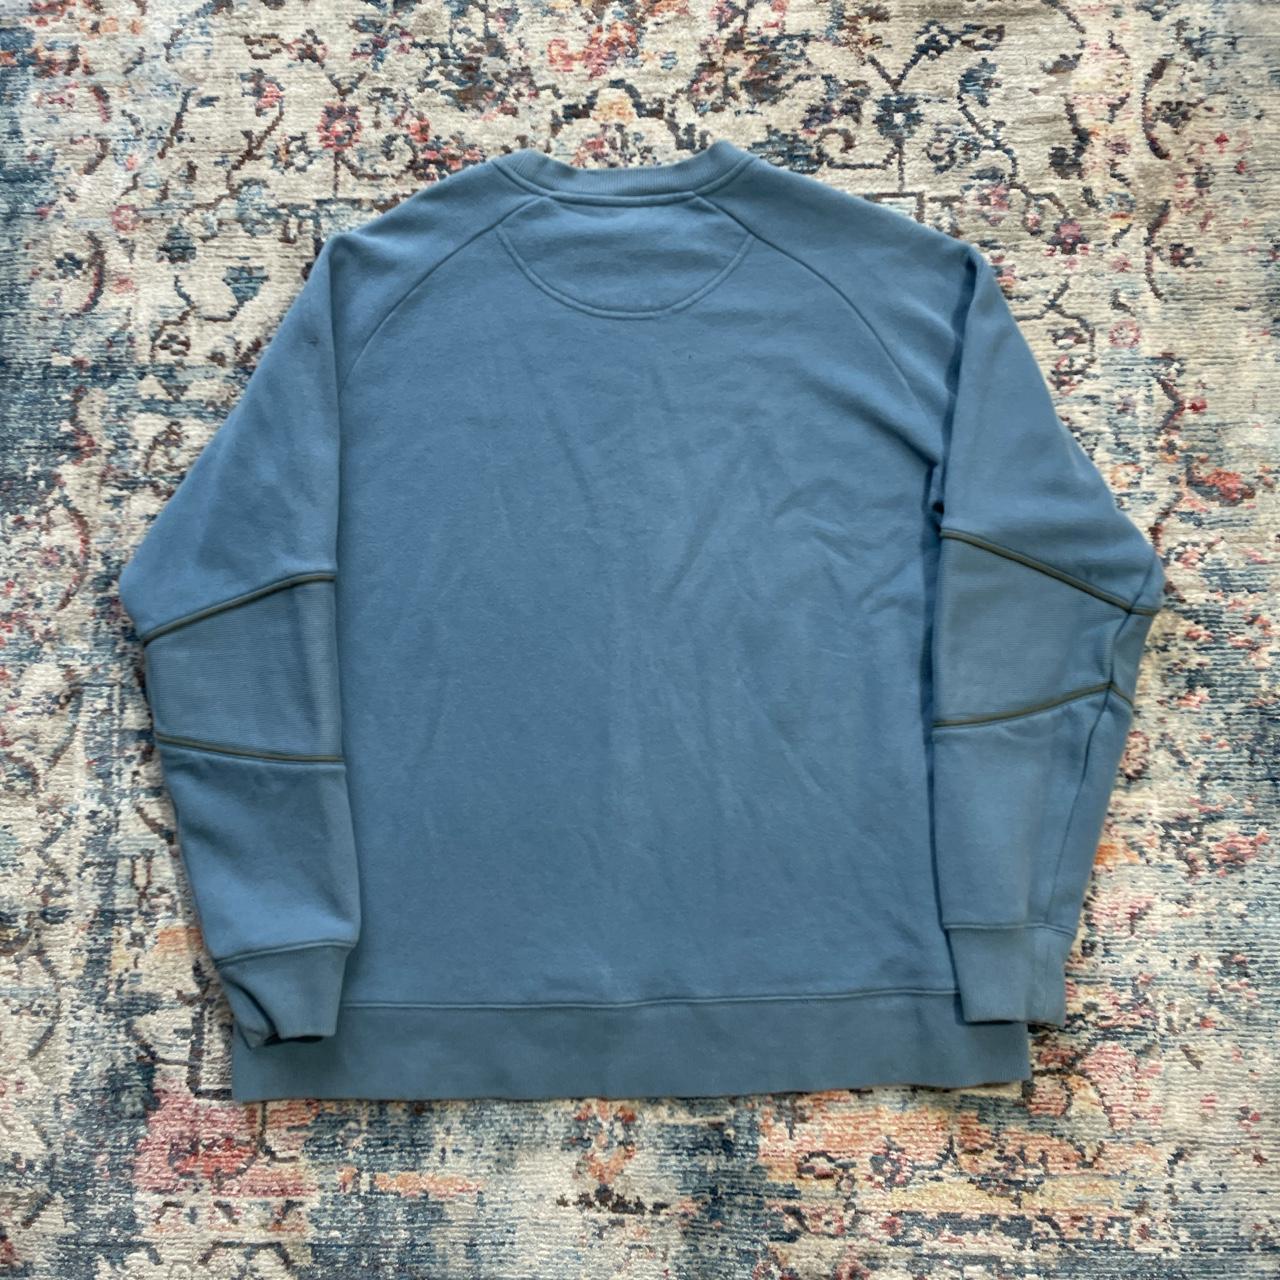 Vintage Nike Blue Embroidered Sweatshirt